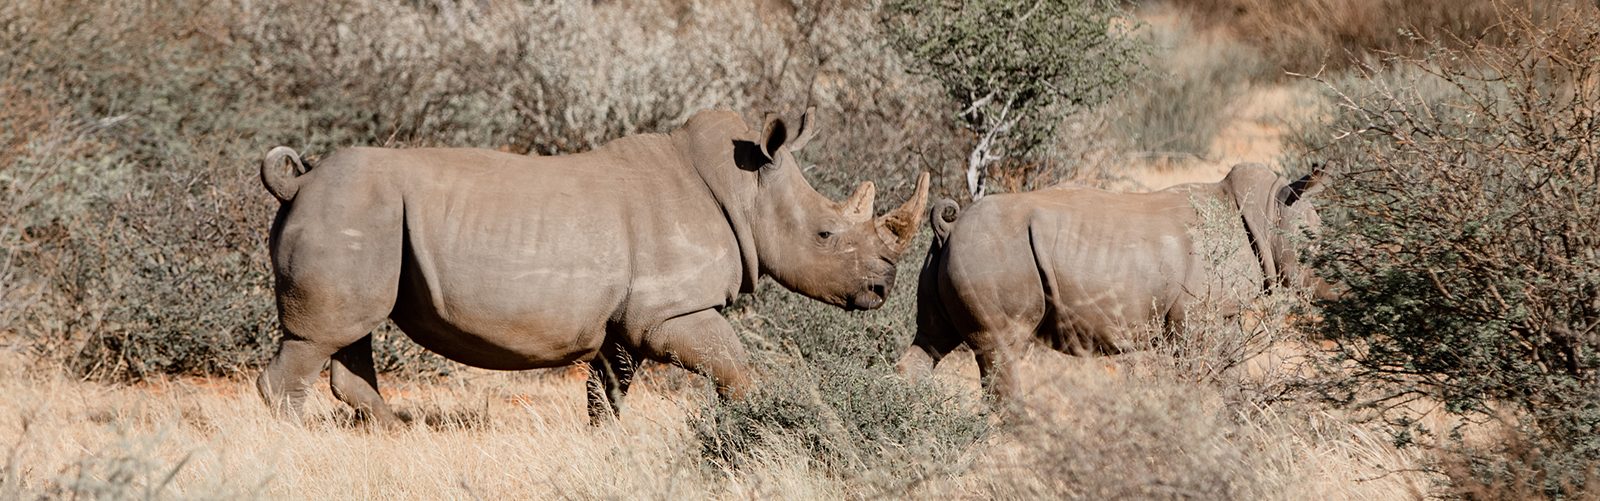 Saving the white rhinos